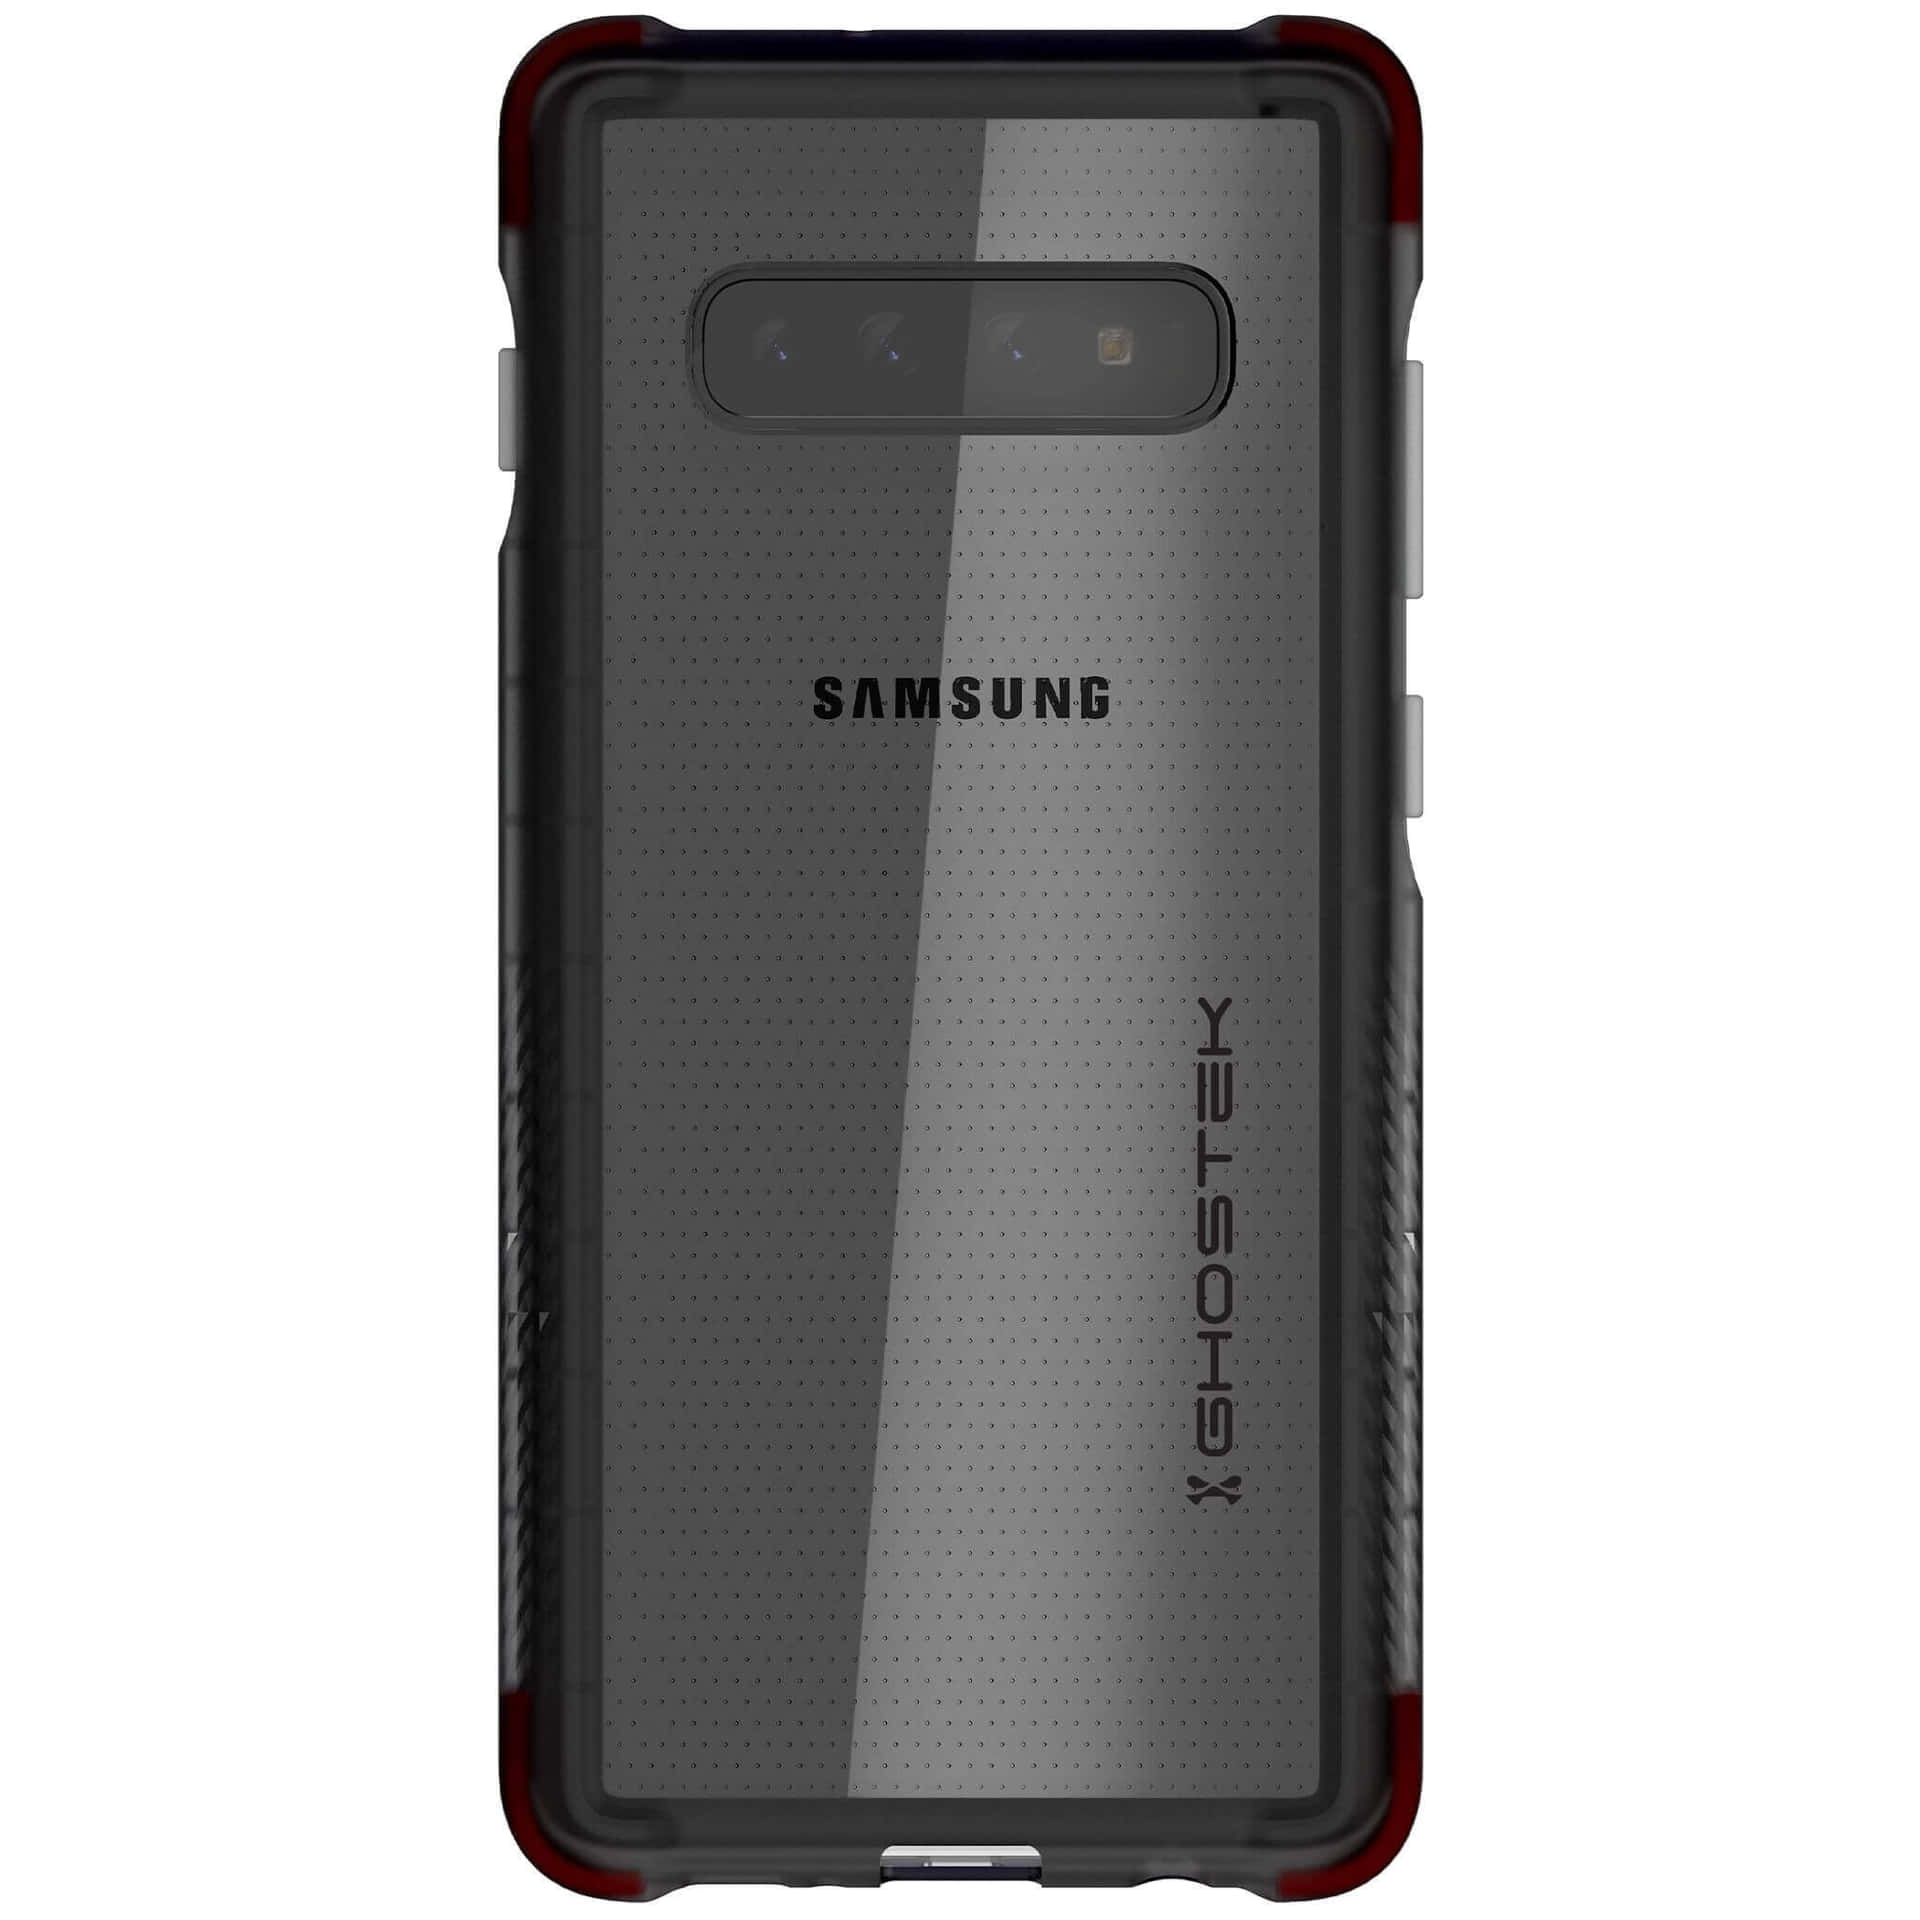 Aexperiência Suprema De Smartphone - Samsung Galaxy S10